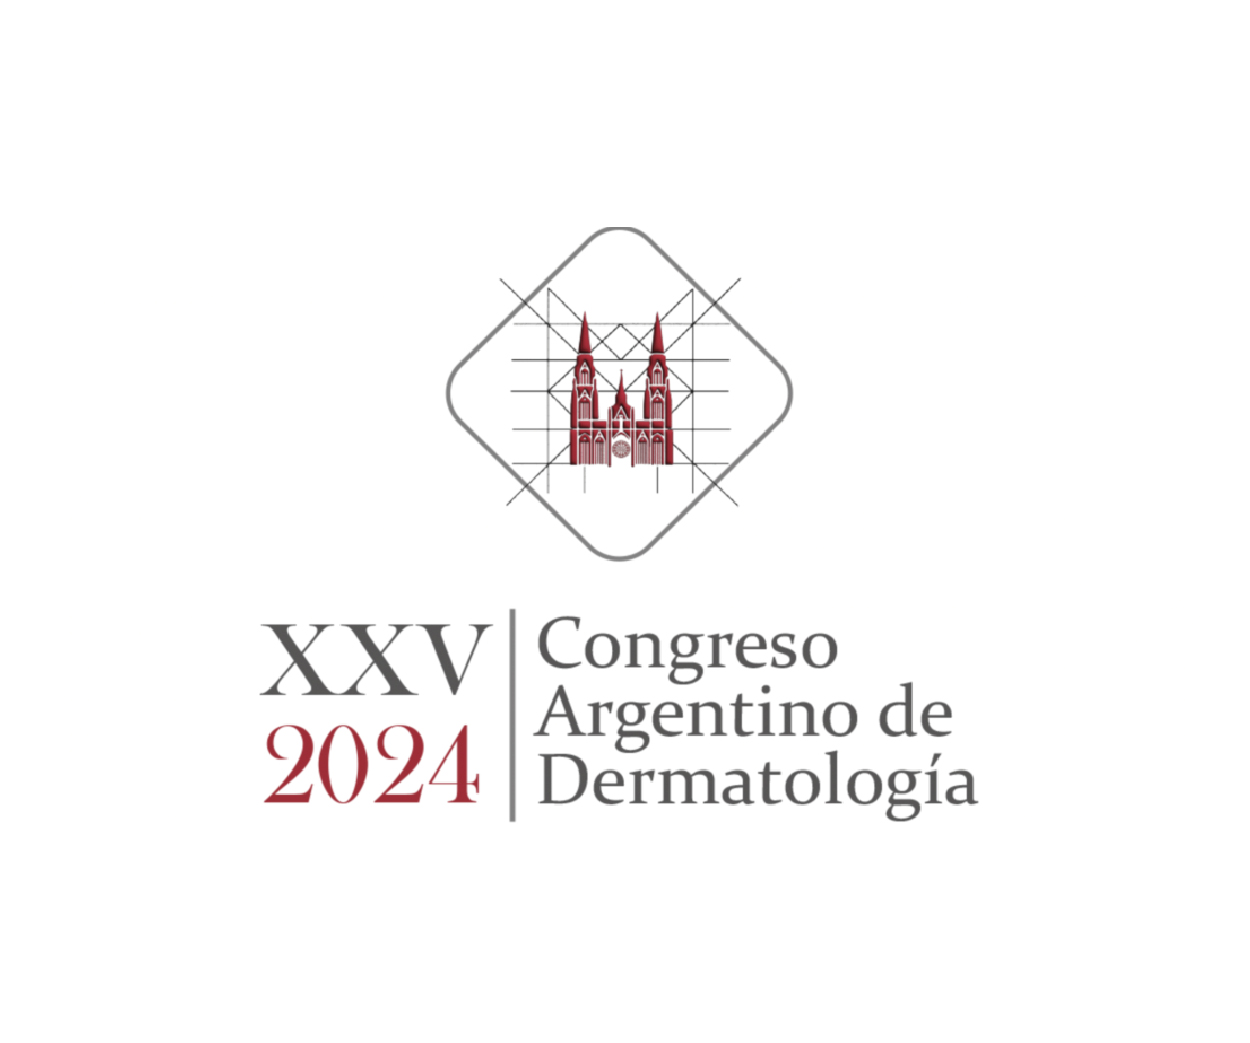 Congreso Argentino de Dermatologia 2024